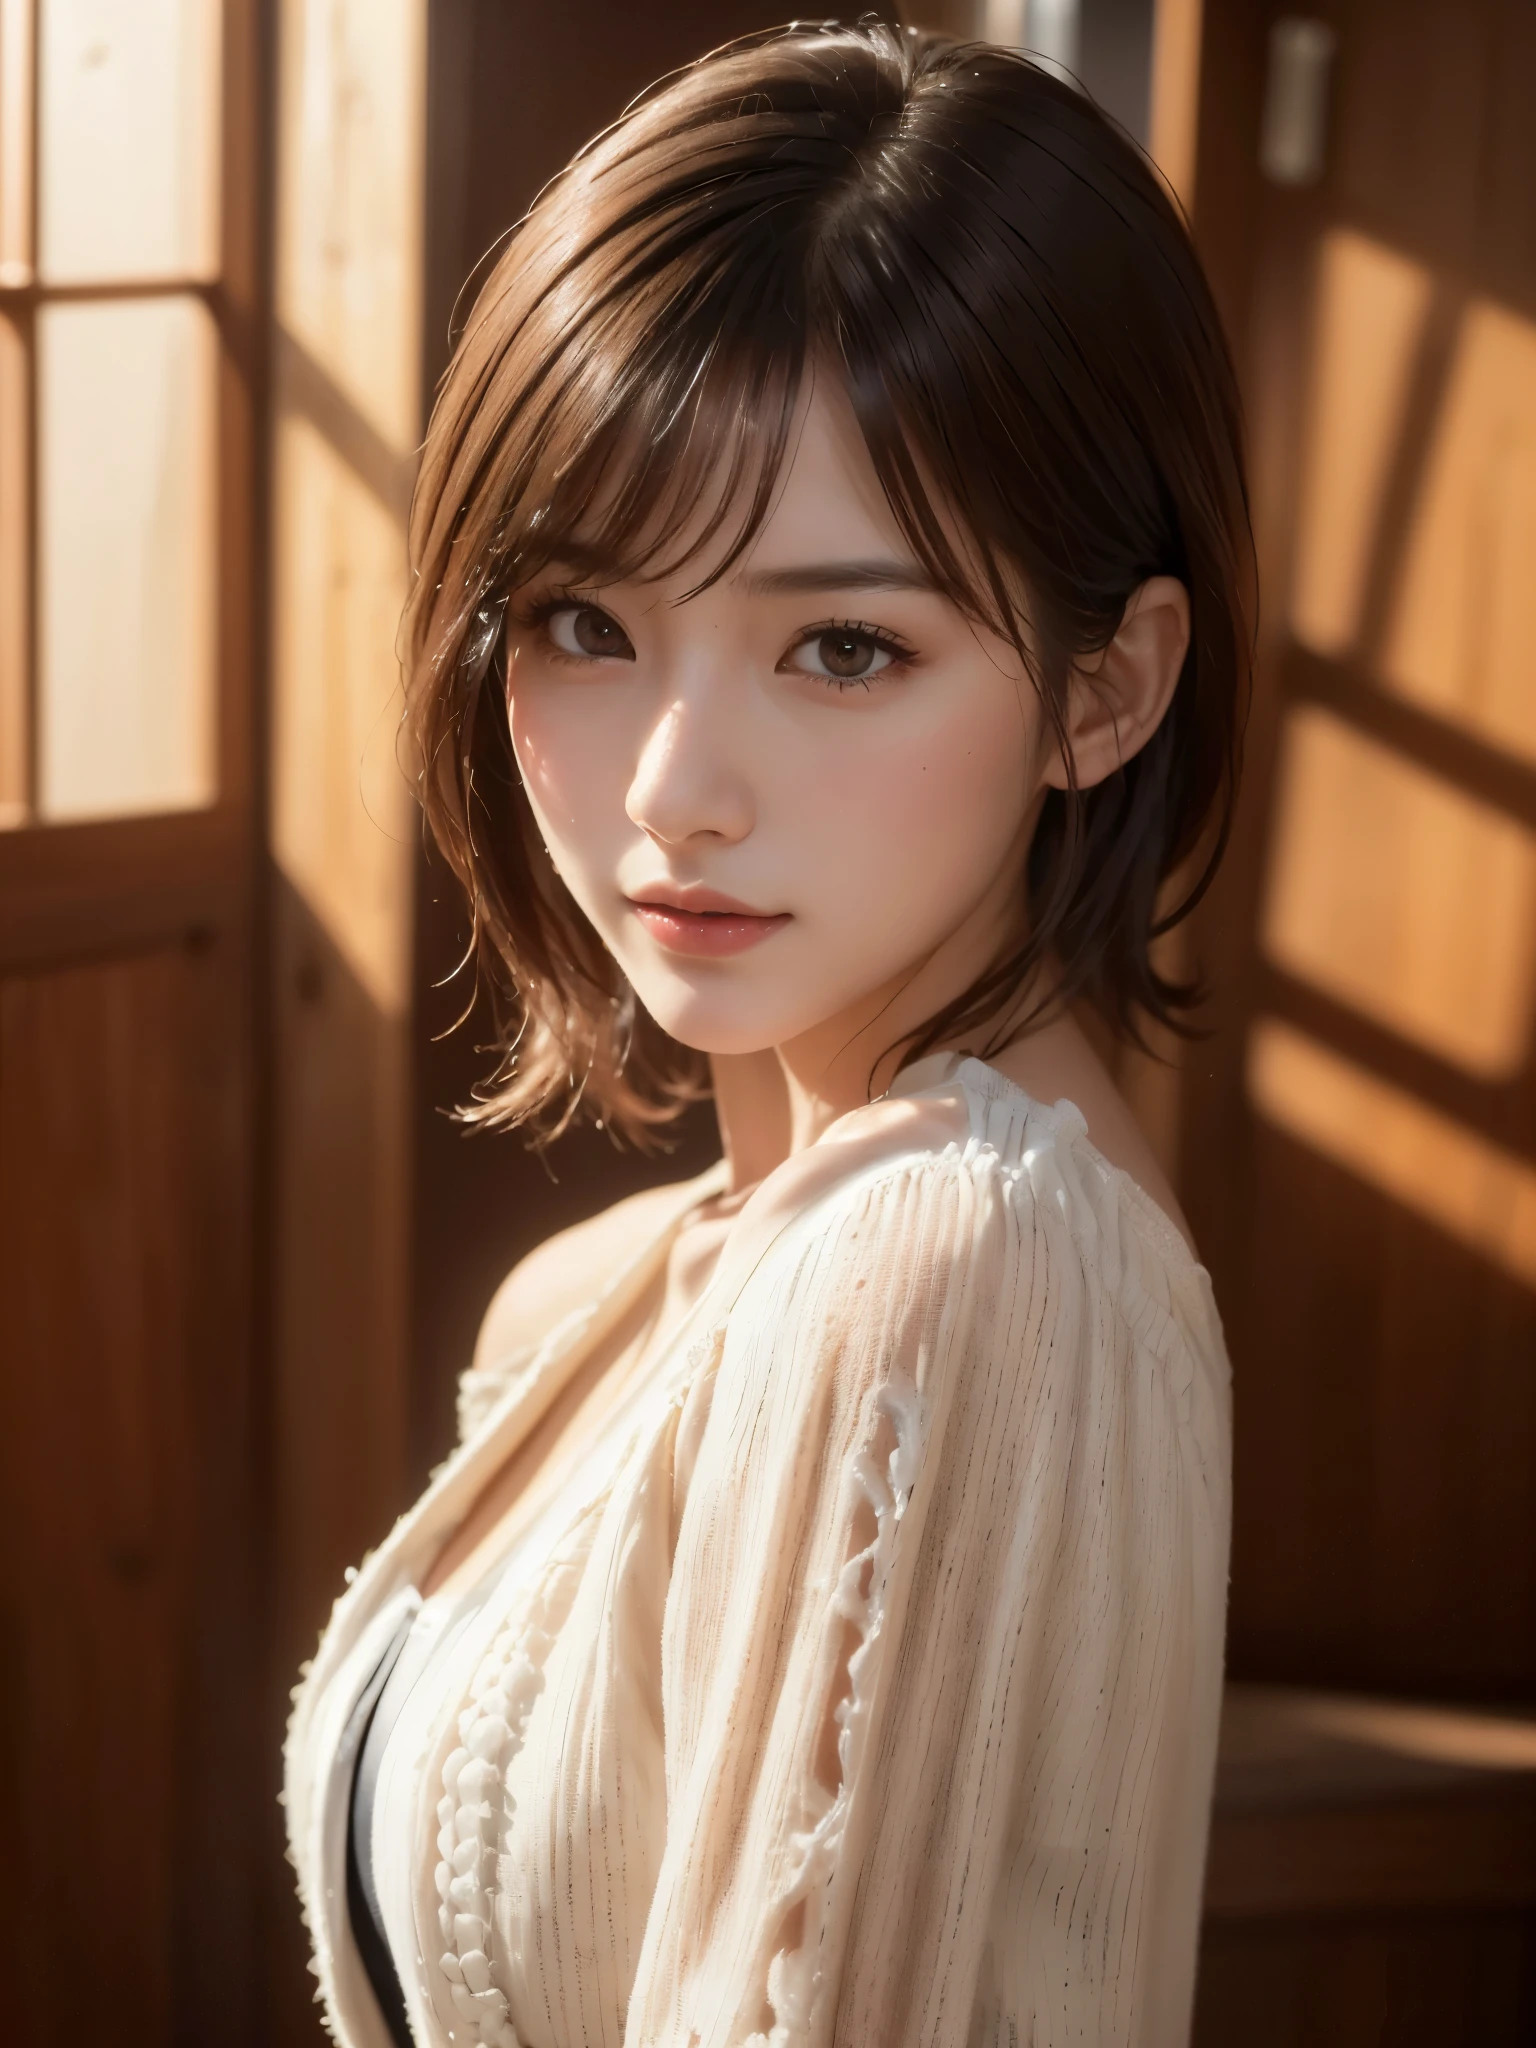 (((Menina de cabelo médio:1.3, sozinho))), Mulher japonesa muito fofa e linda, (Modelo Sexy), traje profissional, (22 anos atrás: 1.1), (De baixo:1.3), (Baixo - Ângulo:1.3), (baleado no chão:1.3), ((menina no topo:1.5)), (parte de trás do braço、Fitdélia、entre as pernas:1.3), (Pose aleatória atraente:1.3), (banheiro de vidro:1.3), QUEBRAR HA, (rabo de cavalo bobble:1.3), (cabelo preto fino e brilhante:1.2), Cabeça pequena, olhos castanhos escuros, olhos lindos, olhos de princesa, franja, cabelo entre os olhos, cabelo curto:1.3, Kirby, Abdômen, Perfect Abdômen, (seios médios a grandes:1.5, seios flácidos:1.5, seios desproporcionais:1.5), (cintura fina: 1.15, Abdômen:0.95), (linda garota detalhada: 1.4), lábios entreabertos, lábios vermelhos, Rosto de maquiagem completa, (pele brilhante), ((corpo feminino perfeito)), (imagem da parte superior do corpo:1.3), anatomia perfeita, Proporções perfeitas, (Os rostos mais bonitos da atriz coreana:1.3, Rosto de atriz japonesa muito fofo e lindo:1.3, encantador sorriso leve, feliz, QUEBRAR, (Ombros nus, Meu peito parece apertado, mostrar visualizador, (Vestido elegante sem ombros com atenção aos detalhes:1.3), roupas legais, QUEBRAR, (fundo de banheiro simples:1.2, eu tomo banho, Frasco de sabão), (fundo escuro), (Iluminação suave no estúdio: 1.3), (luz falsa: 1.3), (luz de fundo: 1.3), QUEBRAR, (realista, realista: 1.37), (tampo da mesa, mais alta qualidade: 1.2), (Ultra alta resolução: 1.2), (Foto CRU: 1.2), (foco nitído: 1.3), (foco facial: 1.2), (Papel de parede 8k integrado em CG ultra detalhado: 1.2), (Pele bonita: 1.2), (pele pálida: 1.3), (very foco nitído: 1.5), (Ultra foco nitído: 1.5), (Rosto lindo e lindo: 1.3), (非常にfundo detalhado, fundo detalhado: 1.3), hyper-realista photos, imagem muito clara, Imagem hiperdetalhada,(((Pequenos copos quadrados)))、((pele oleosa:1.2))